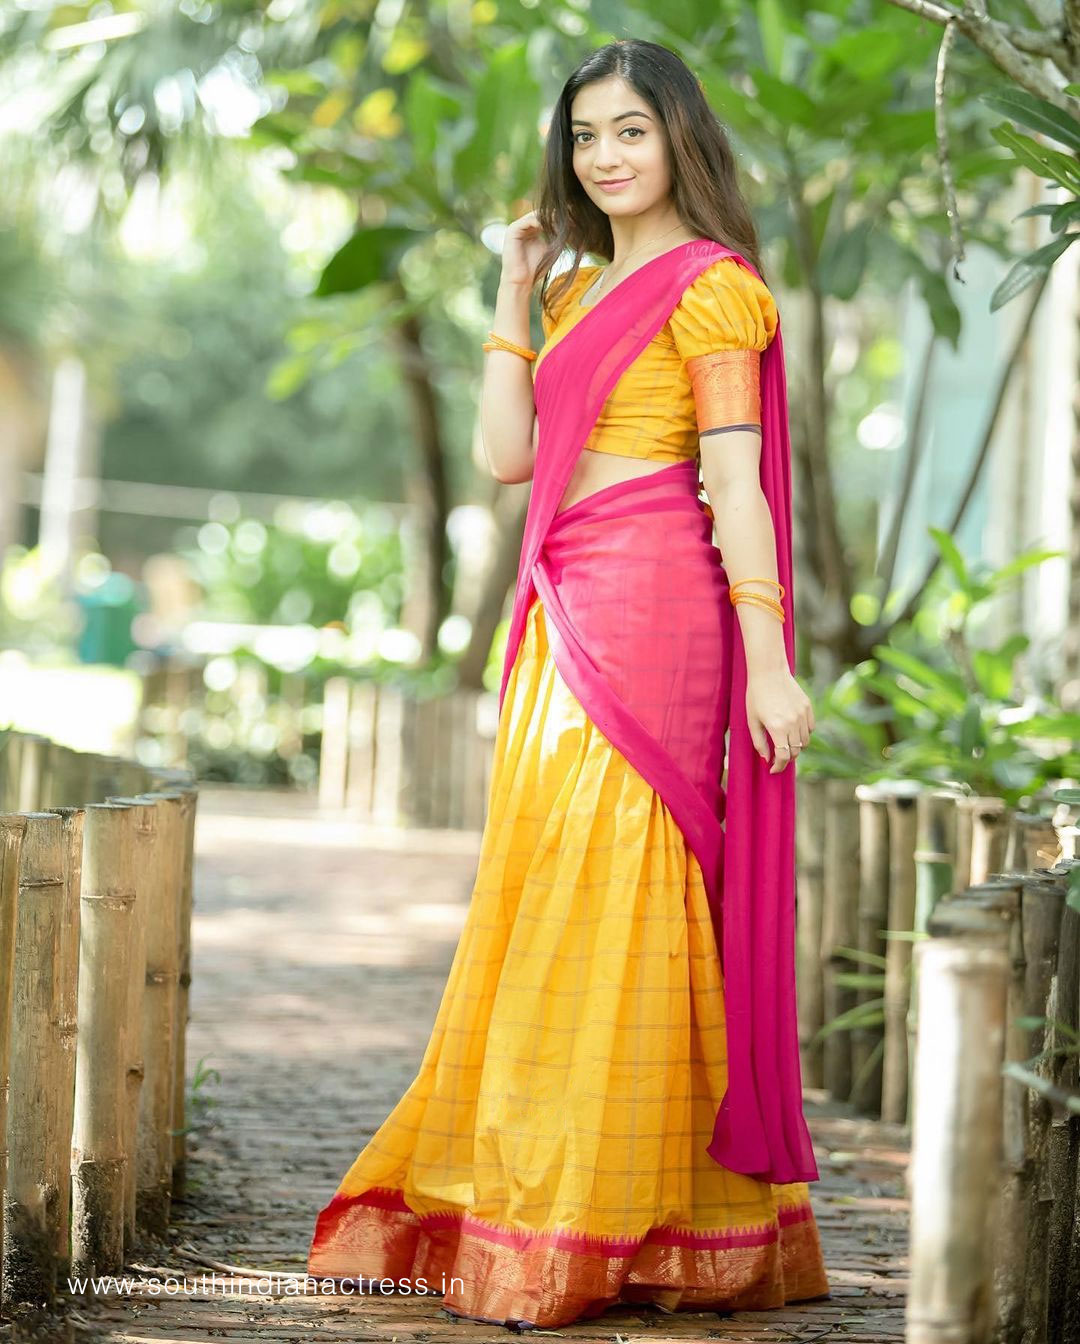 Athmika Sumithran in yellow and pink half saree - South Indian Actress